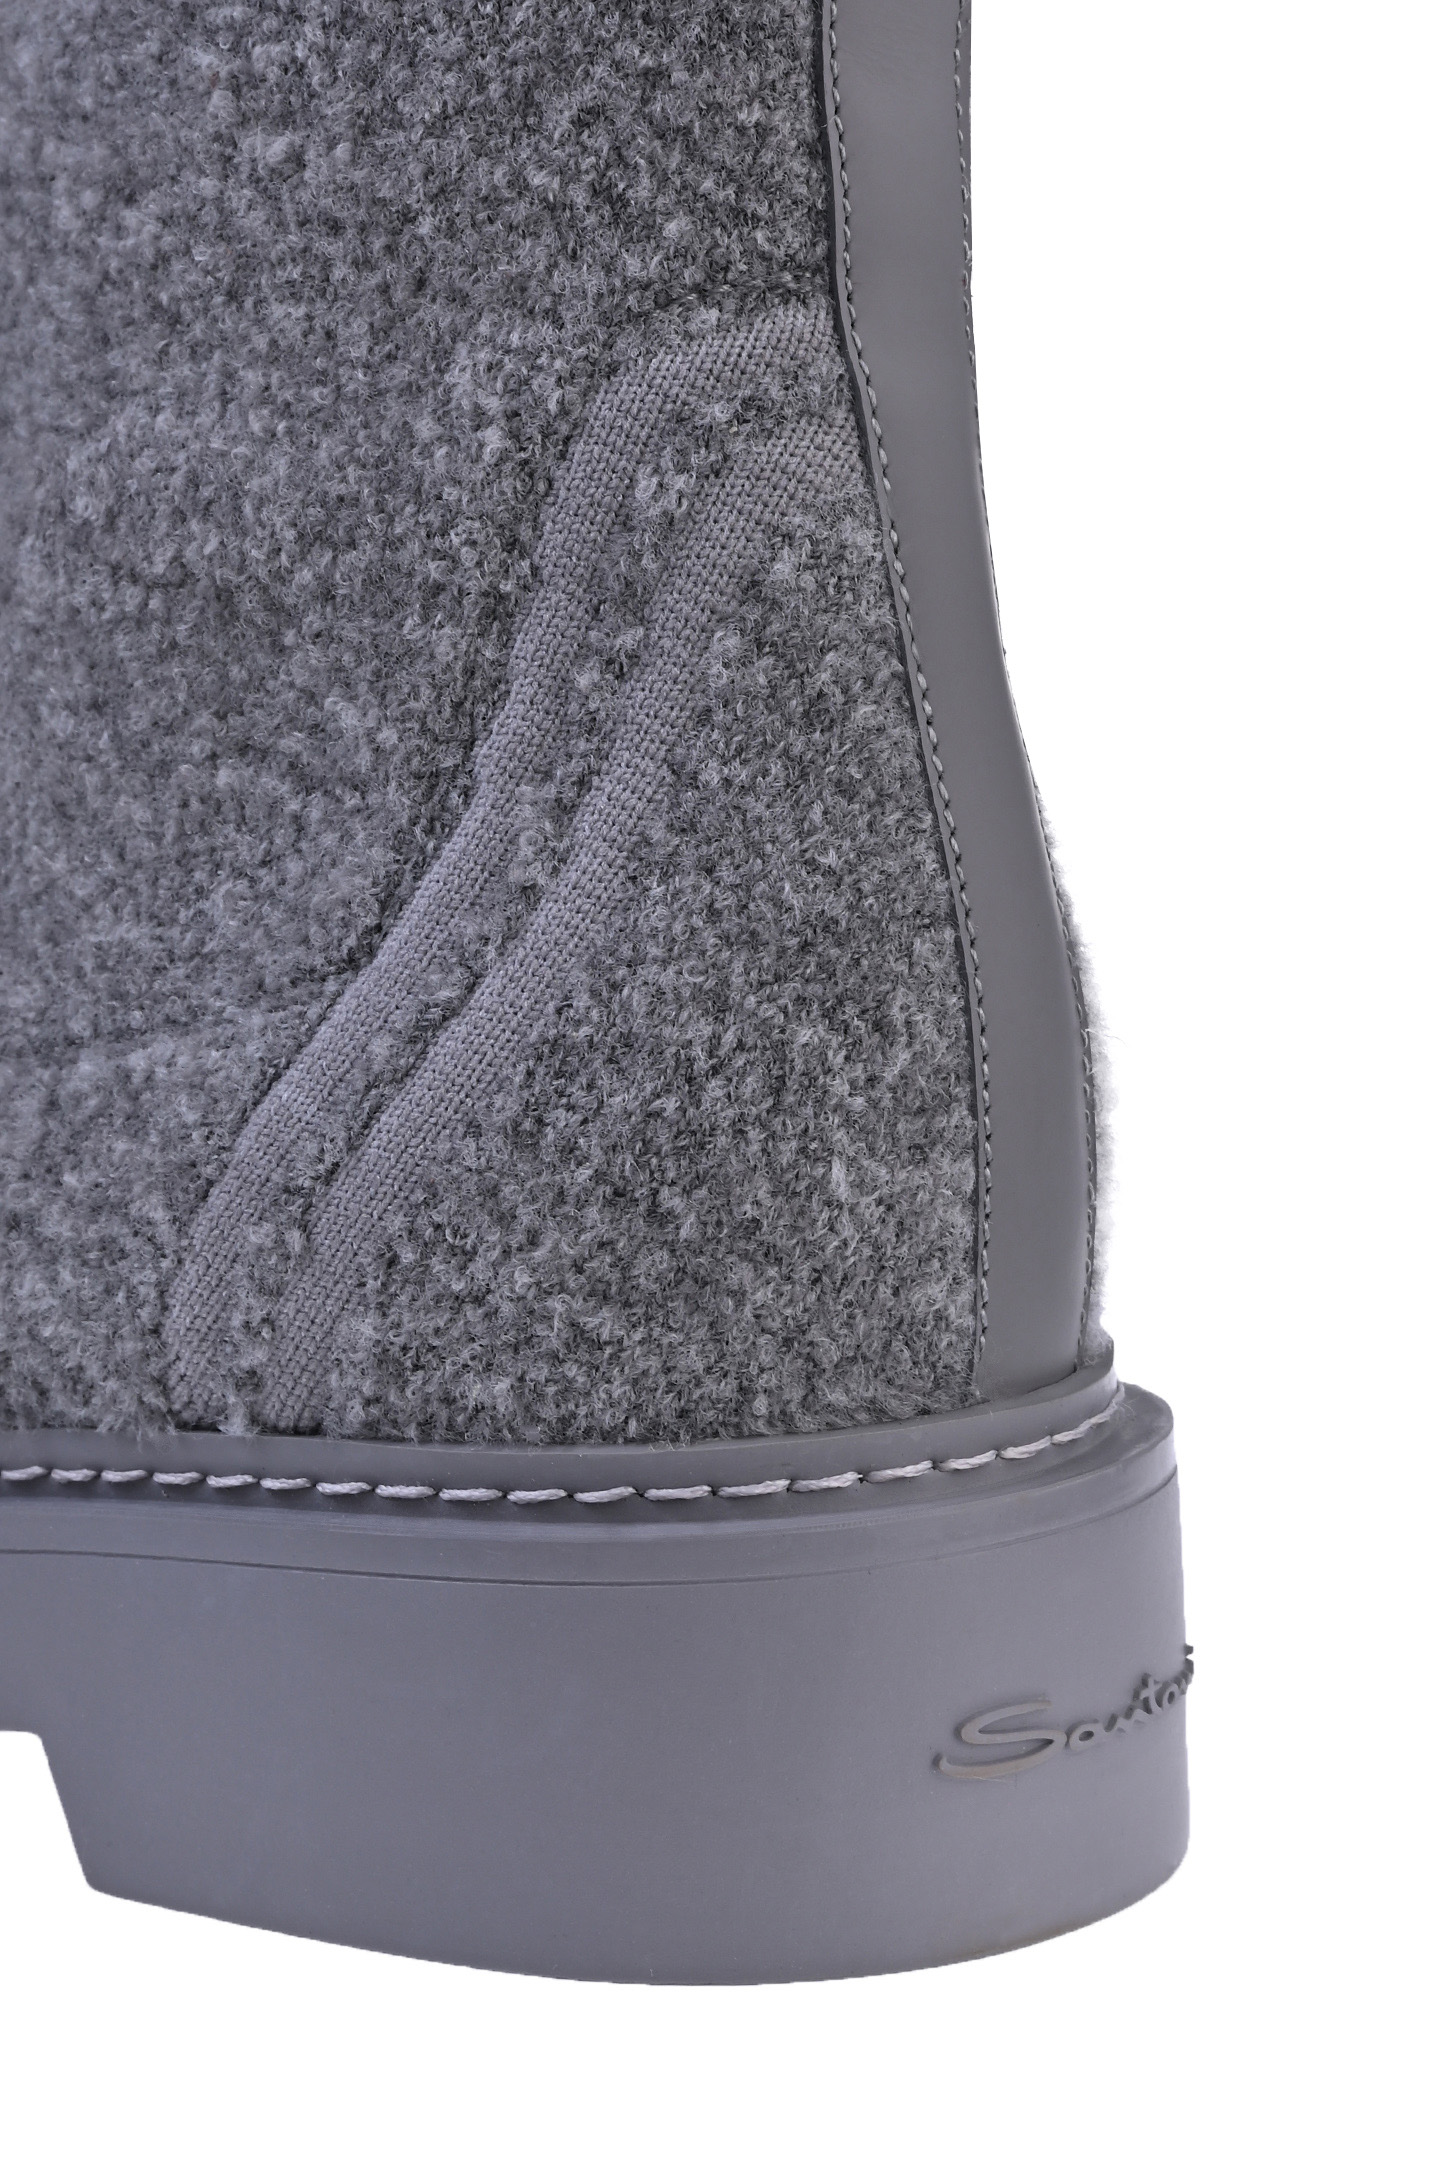 Ботинки SANTONI WTHW70166GRITUSKG23, цвет: Серый, Женский